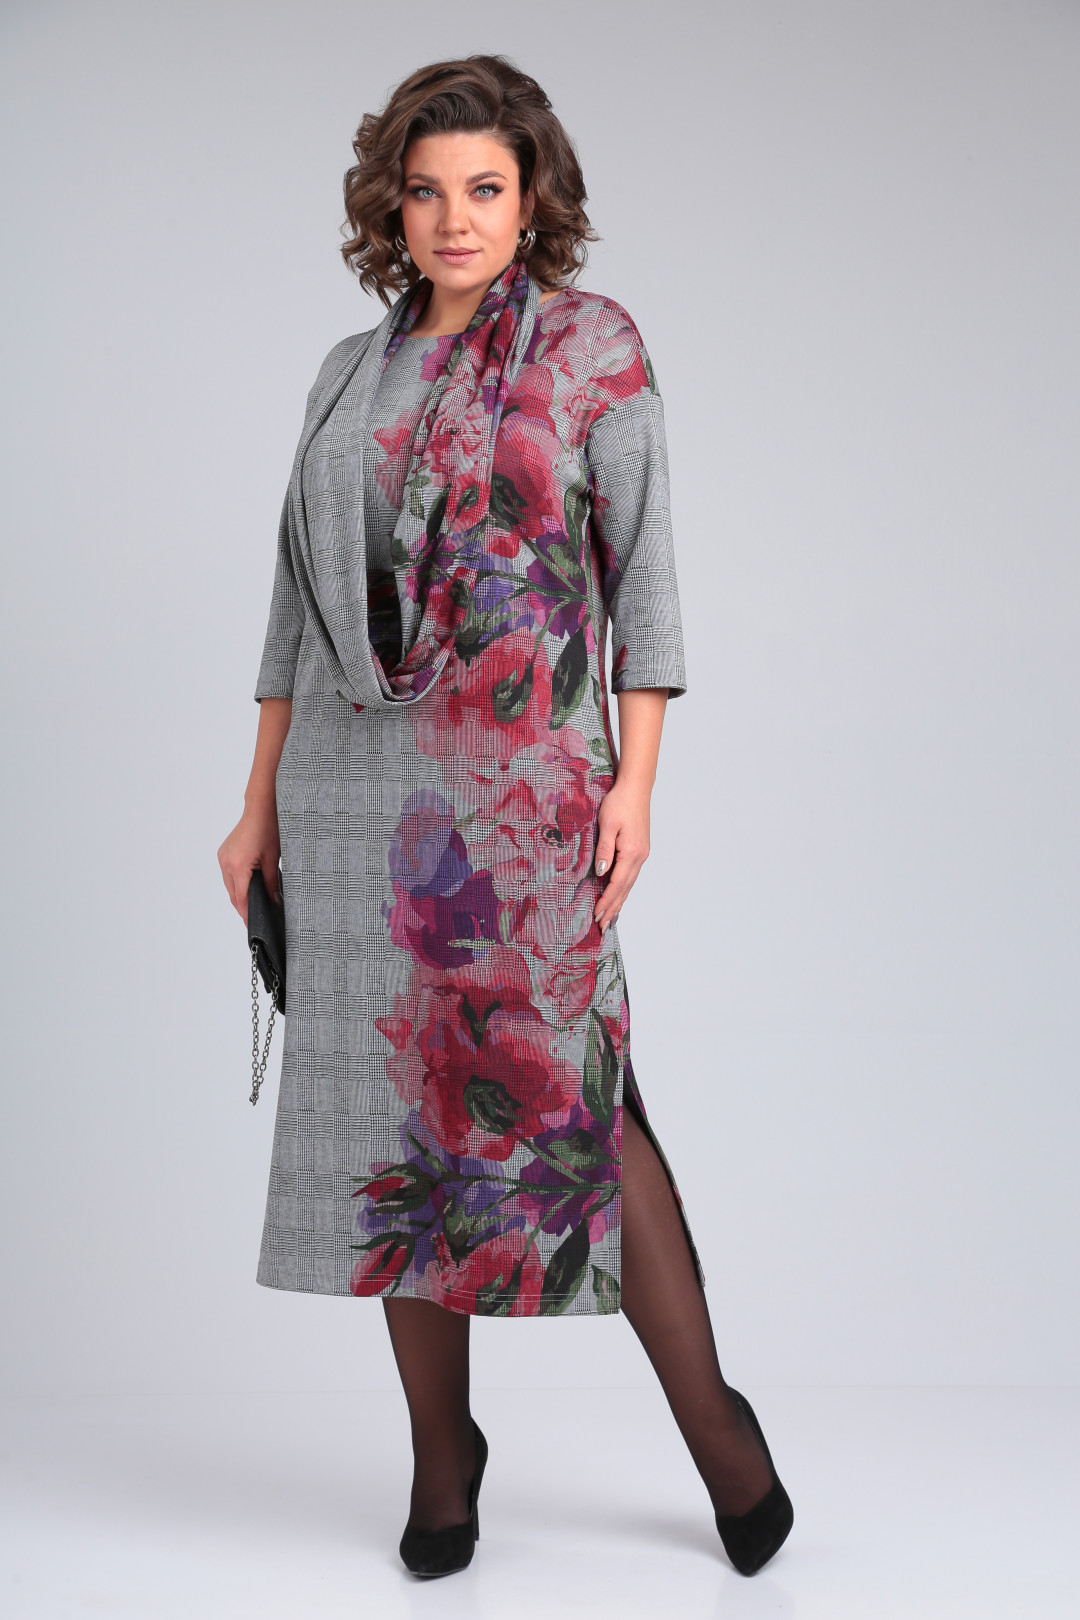 Платье Мишель Шик 2152 серый, лиловая роза